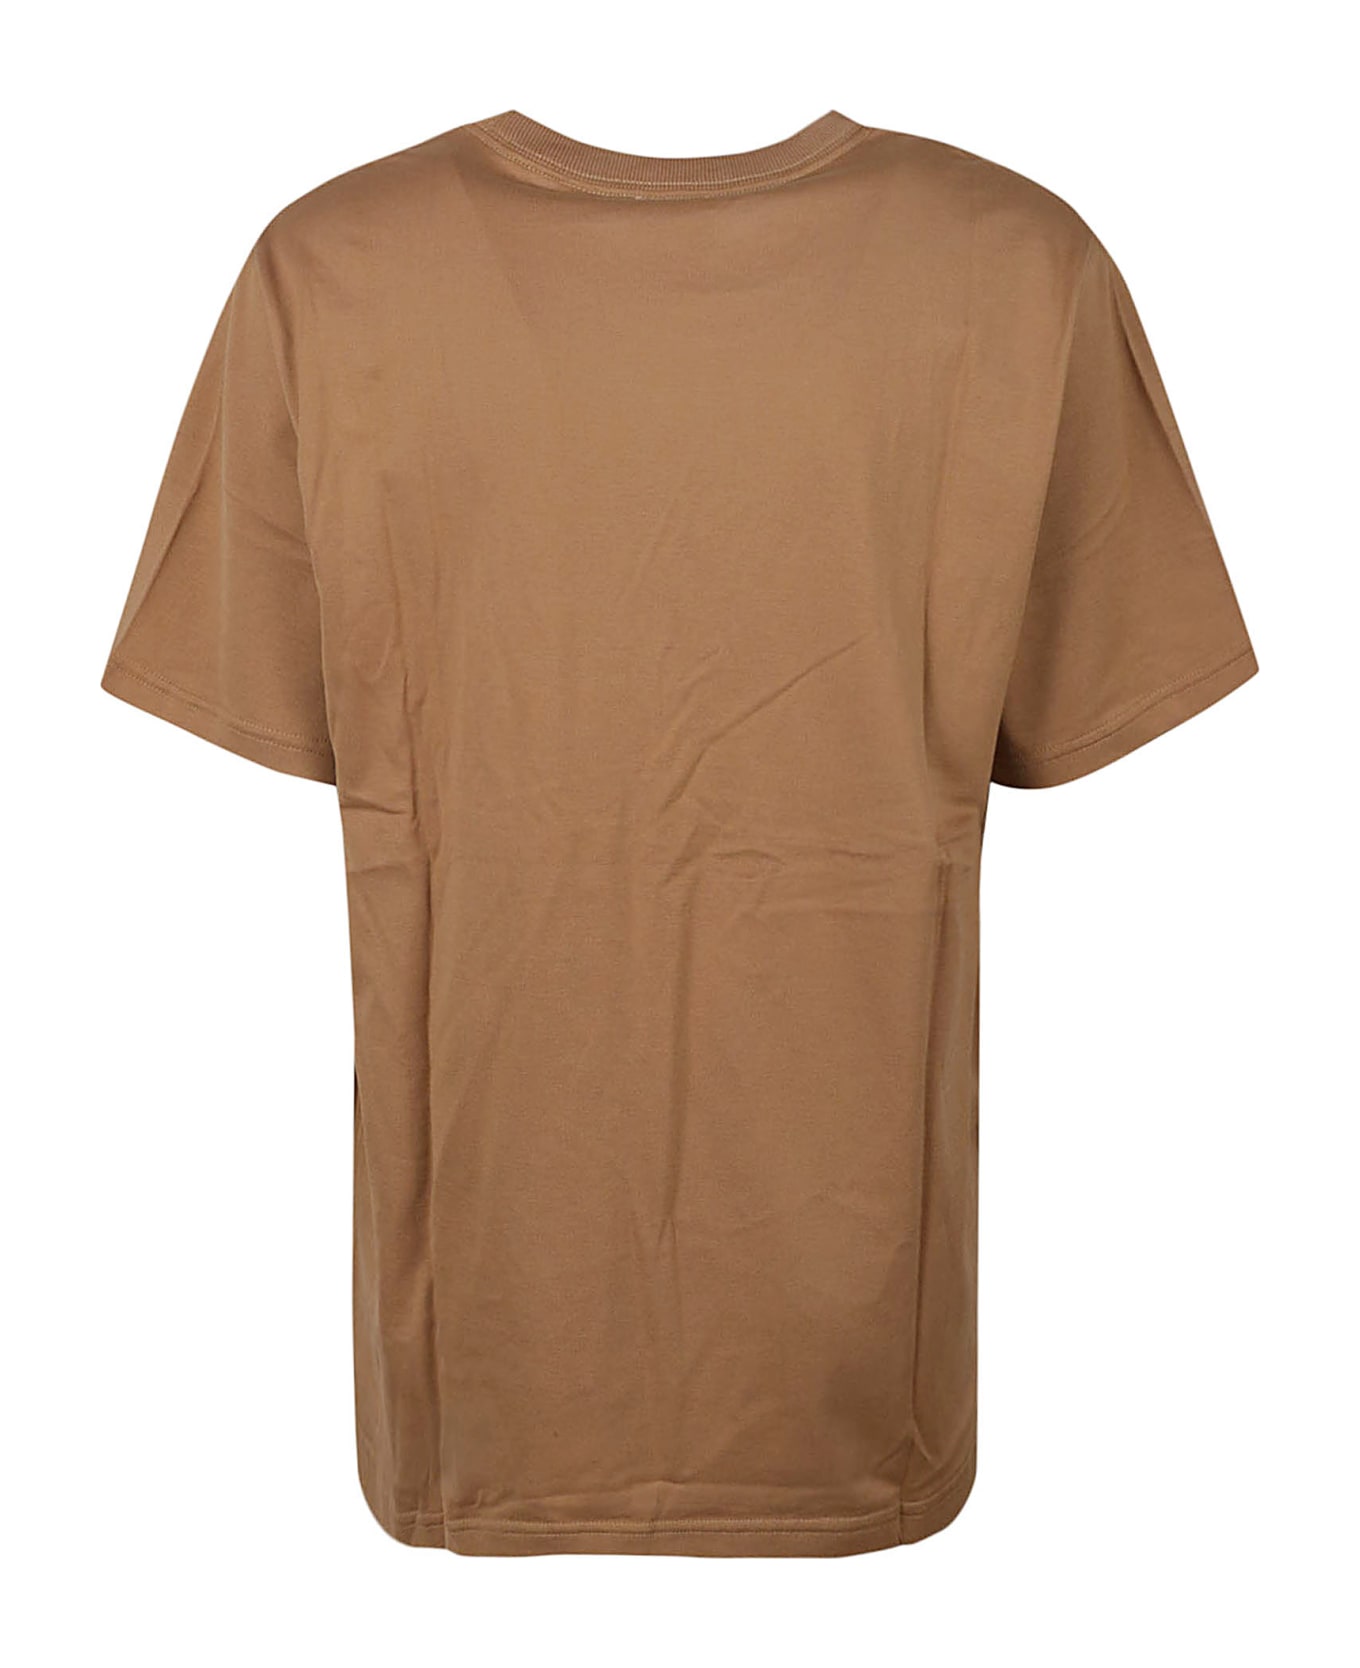 Burberry Margot T-shirt - Camel